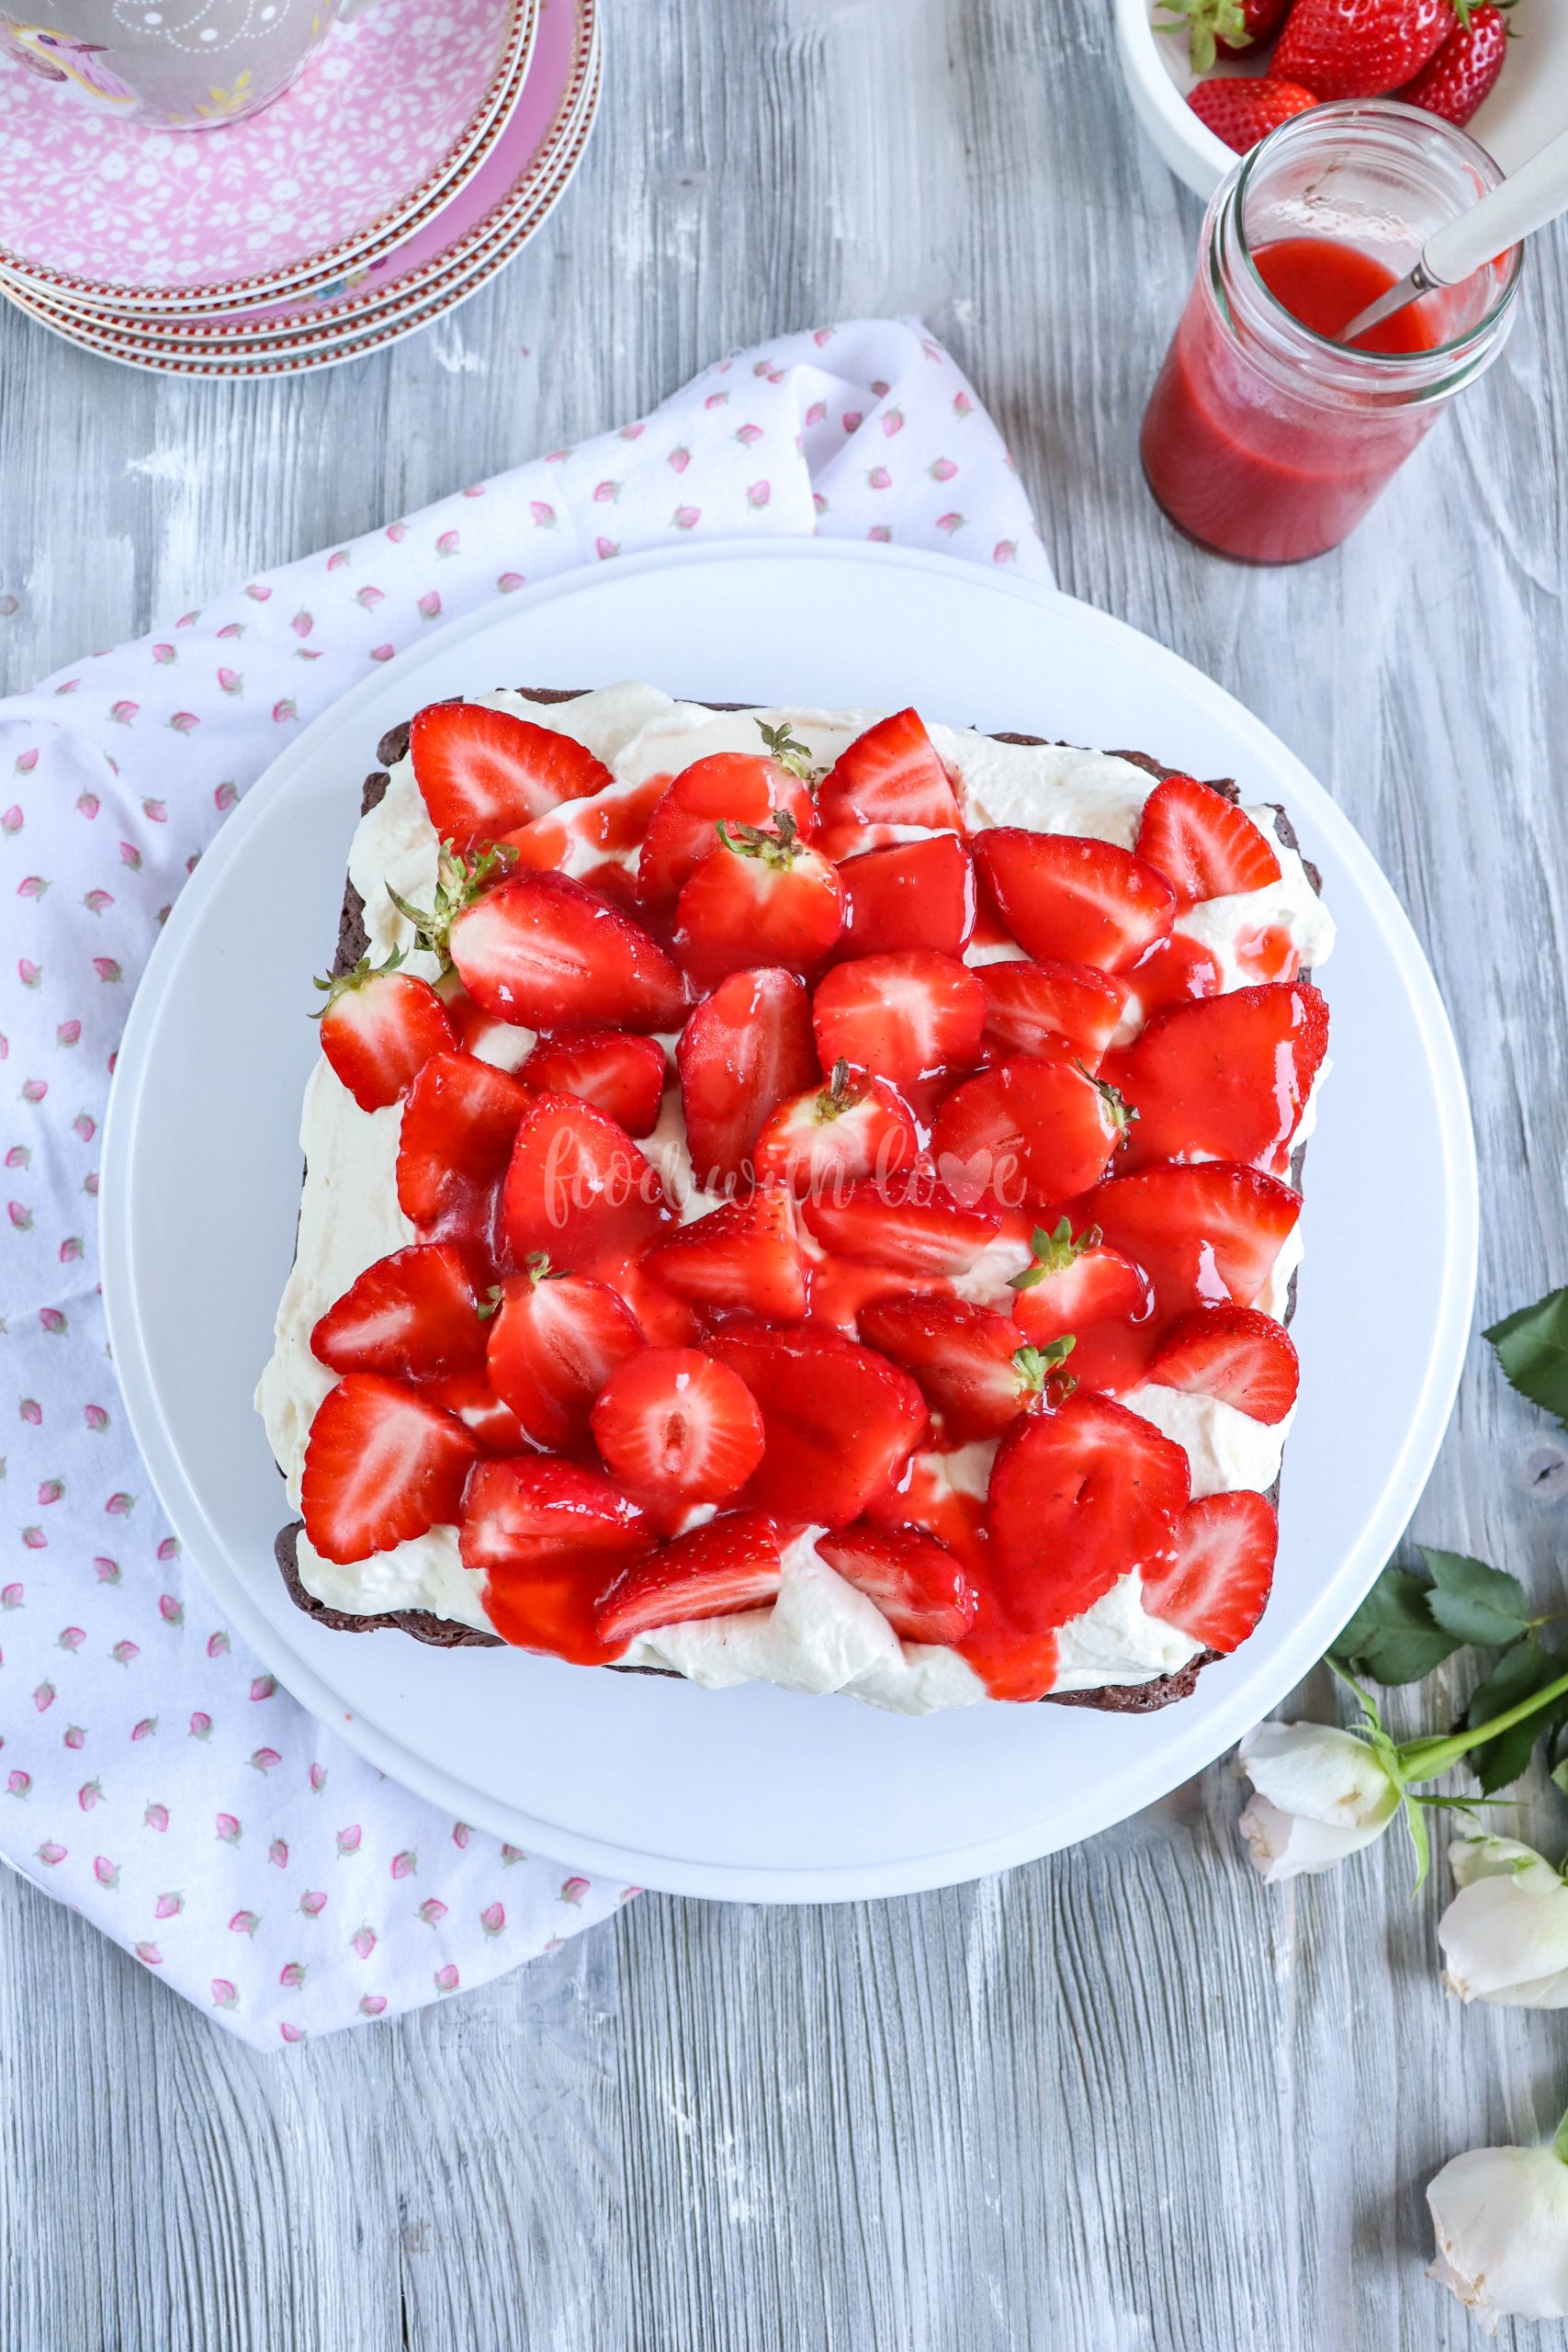 Erdbeer-Brownie-Schnitten – Food with Love – Thermomix Rezepte mit Herz